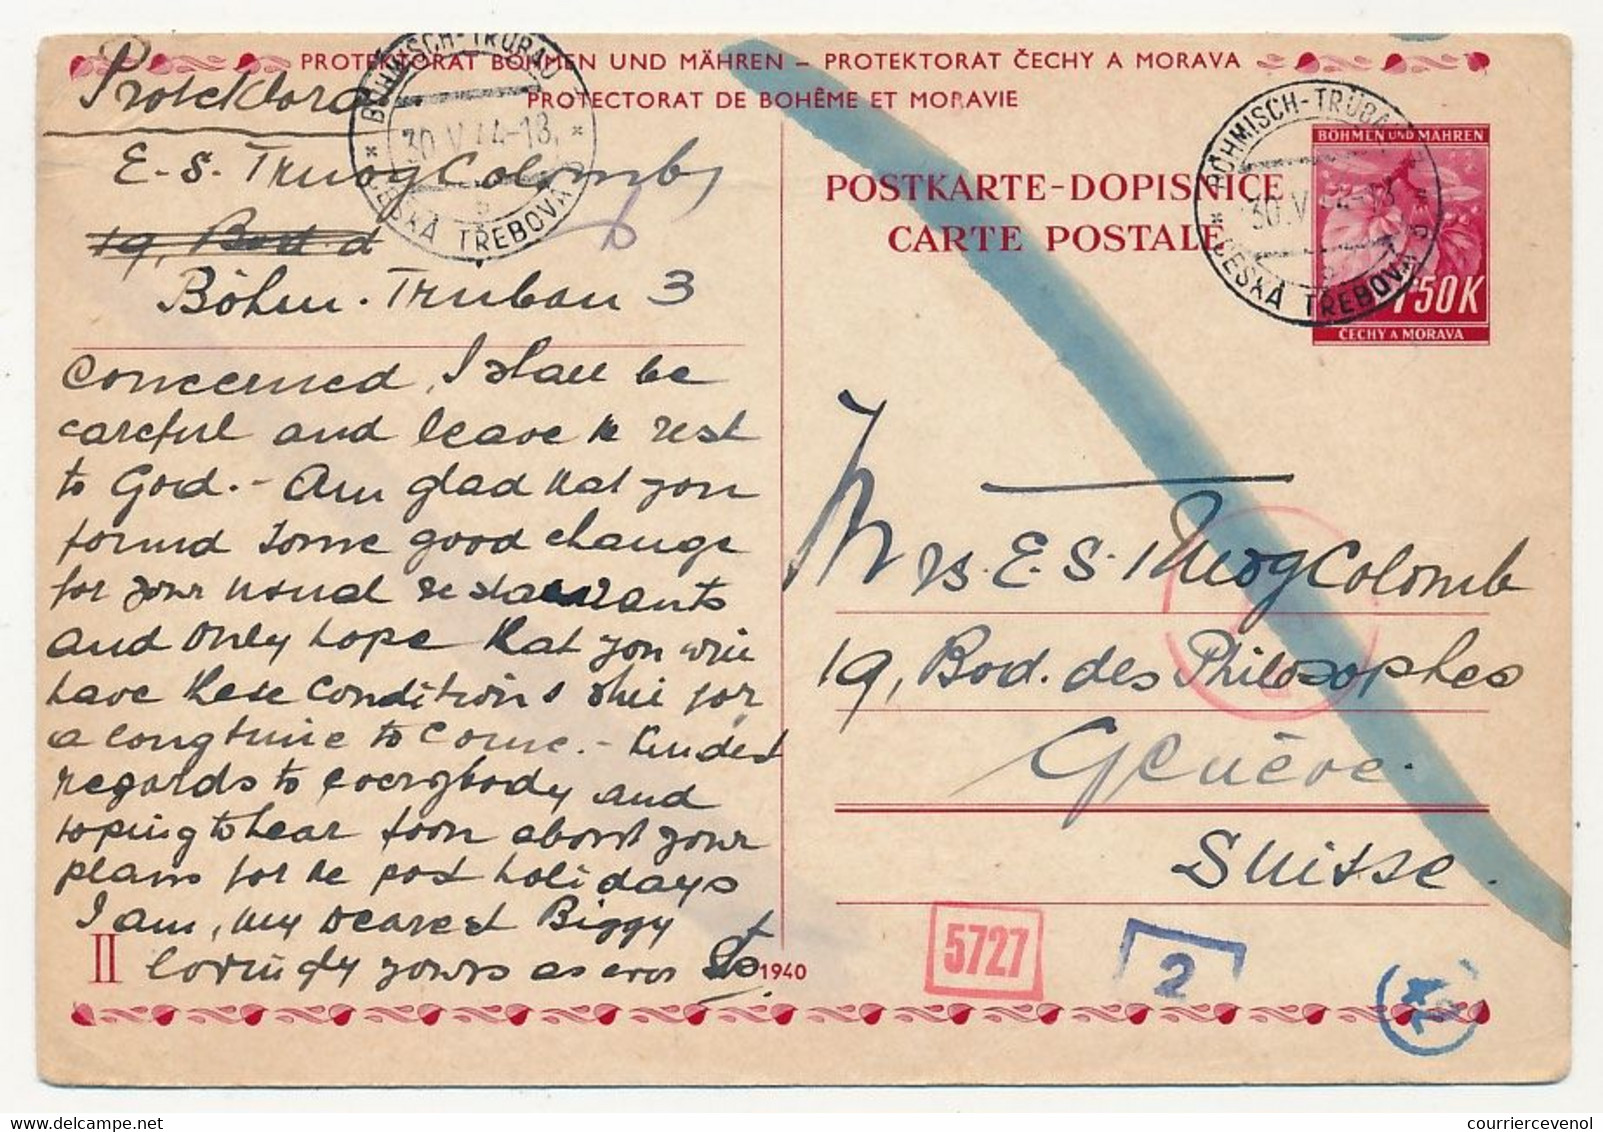 BOHEME MORAVIE - 4 enveloppes + 4 entiers postaux (CP) depuis Böhmisch -Trübau et Parnis, pour Genève - 1941 à 1944